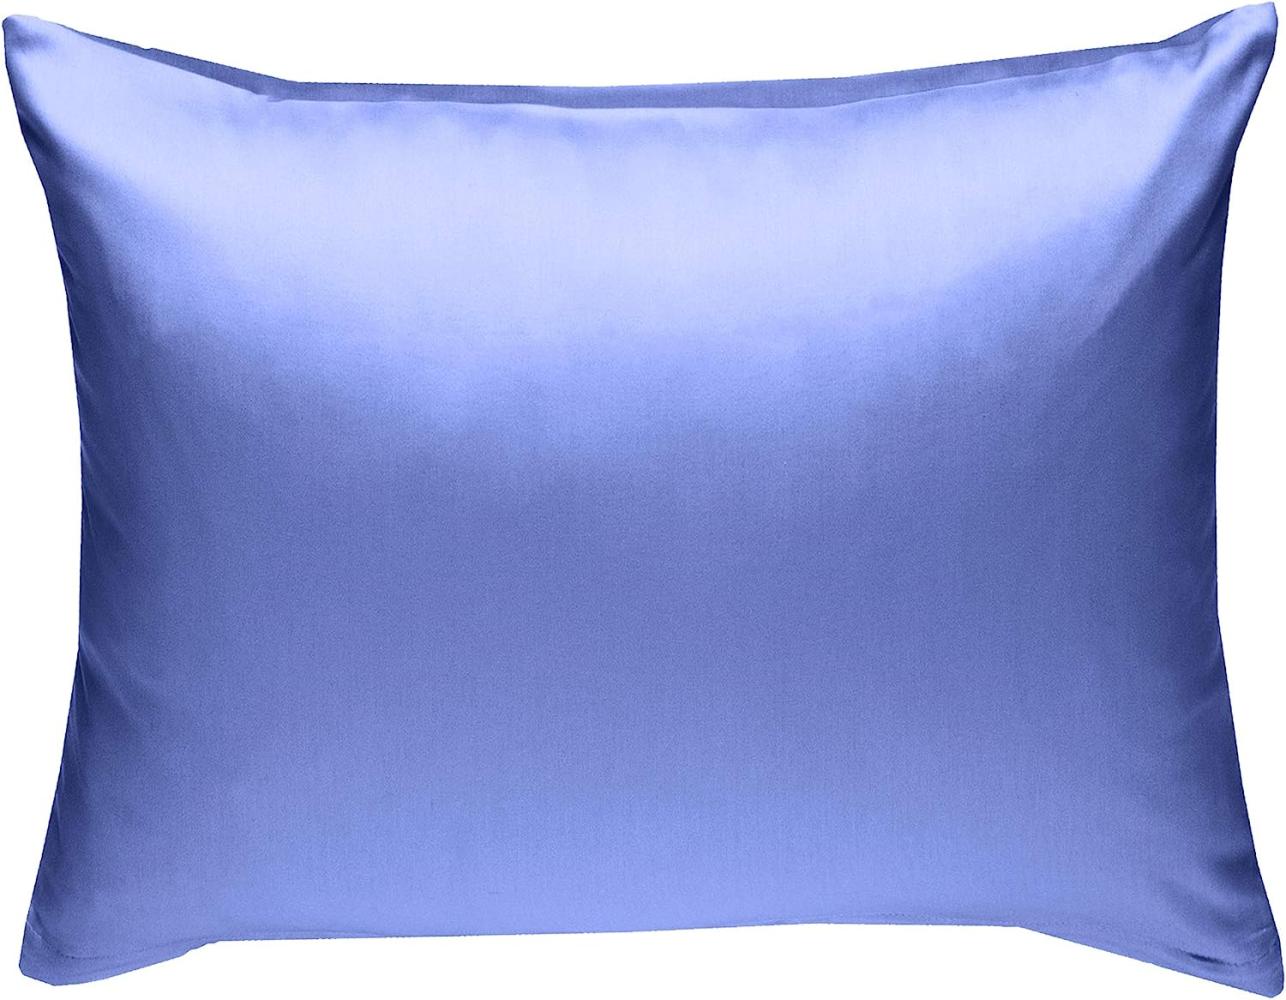 Bettwaesche-mit-Stil Mako-Satin / Baumwollsatin Bettwäsche uni / einfarbig hellblau Kissenbezug 70x90 cm Bild 1